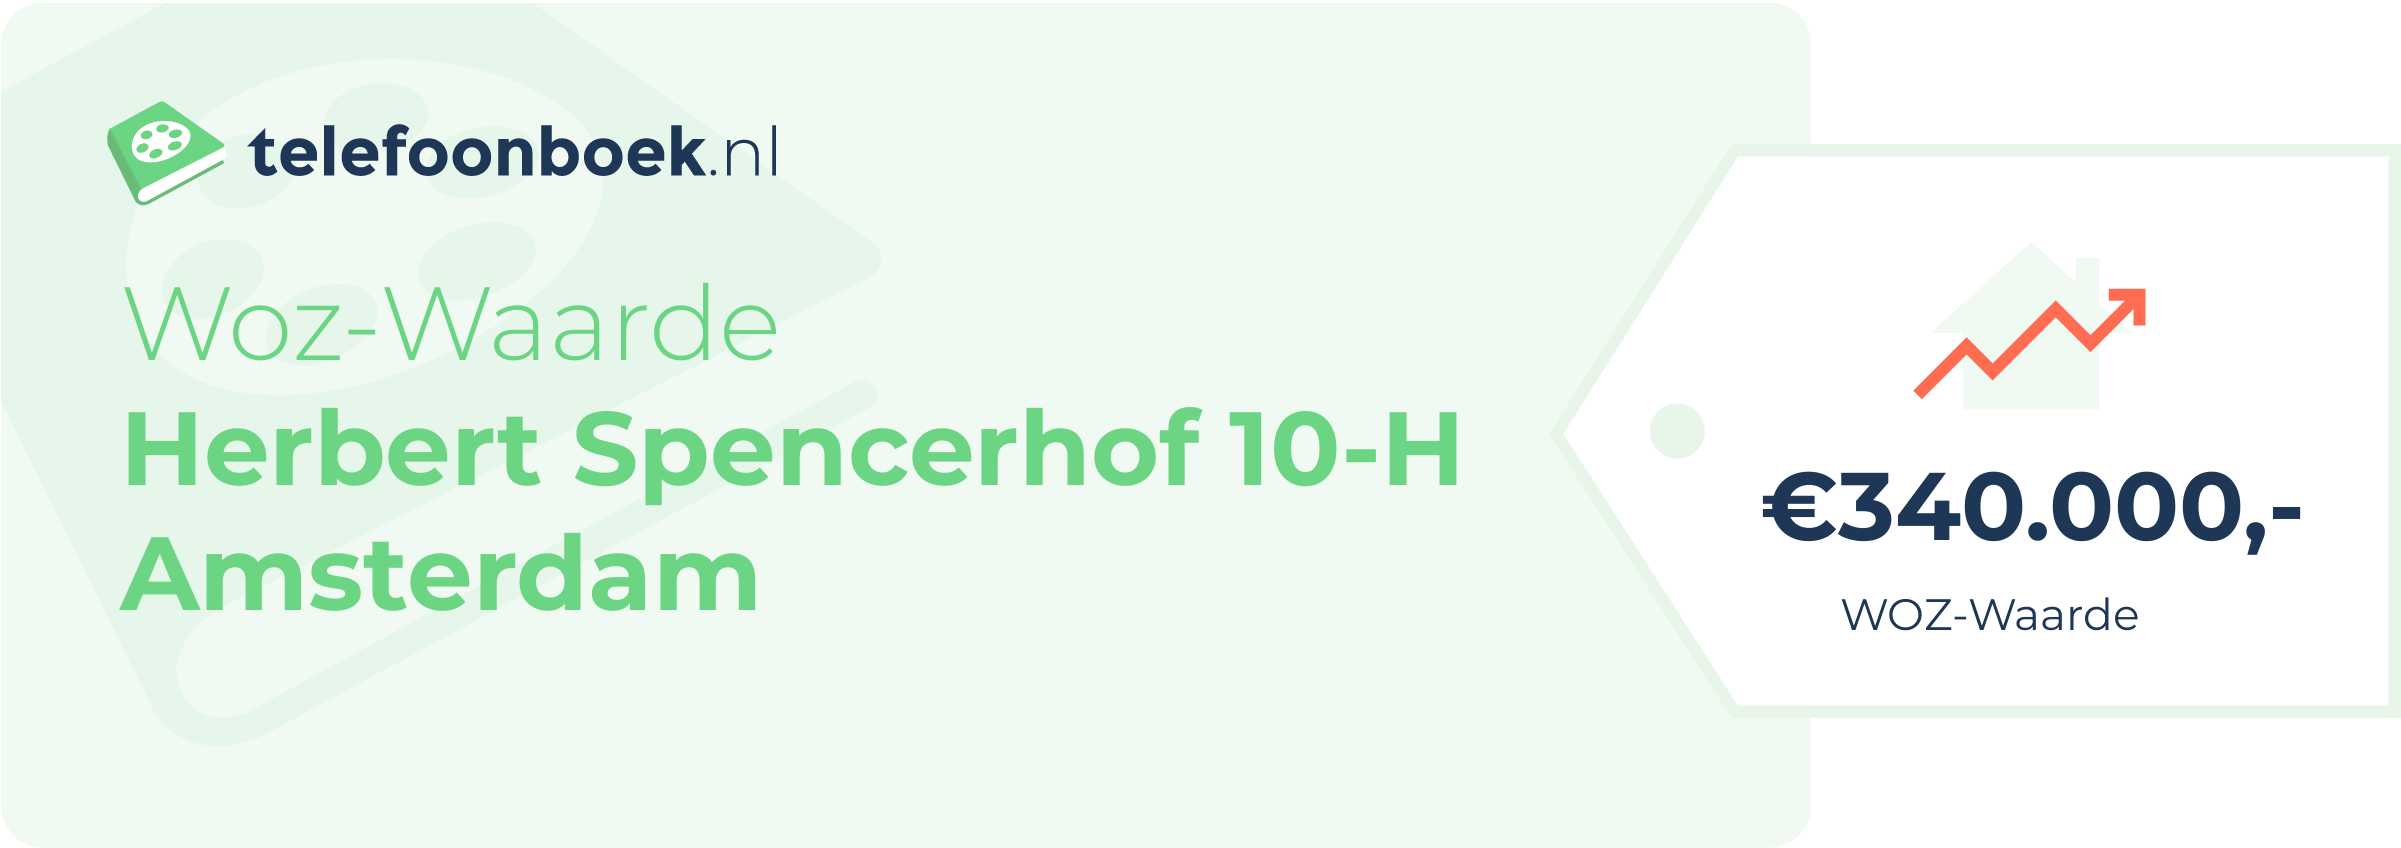 WOZ-waarde Herbert Spencerhof 10-H Amsterdam